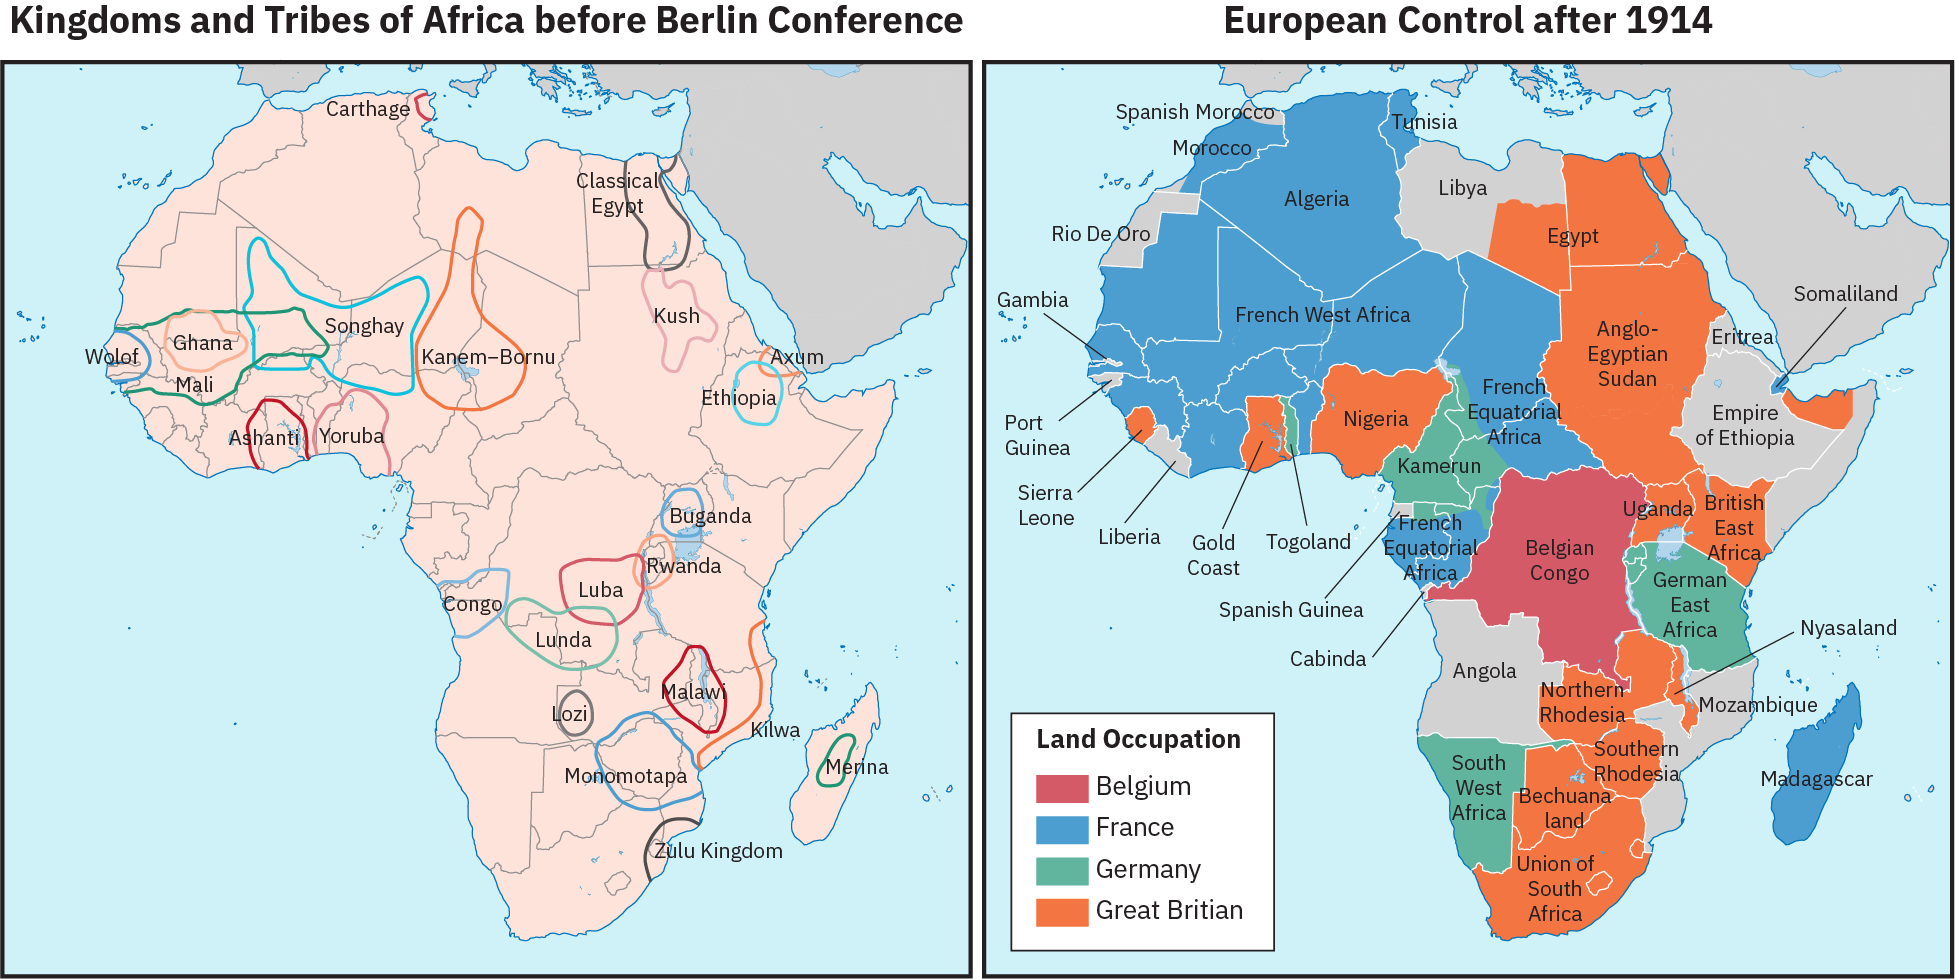 Deux cartes de l'Afrique, côte à côte. La carte de gauche est intitulée « Royaumes et tribus d'Afrique avant la Conférence de Berlin ». Divers territoires sont encerclés et étiquetés avec les noms d'entités politiques telles que Ashanti, l'Égypte classique, Malawi et le Royaume zoulou. Ces territoires ne s'alignent pas sur les frontières des États contemporains. La deuxième carte est intitulée « Le contrôle européen après 1914 ». Cette carte montre les zones d'occupation des terres par la Belgique, la France, l'Allemagne ou la Grande-Bretagne, qui s'alignent sur les frontières des États contemporains.